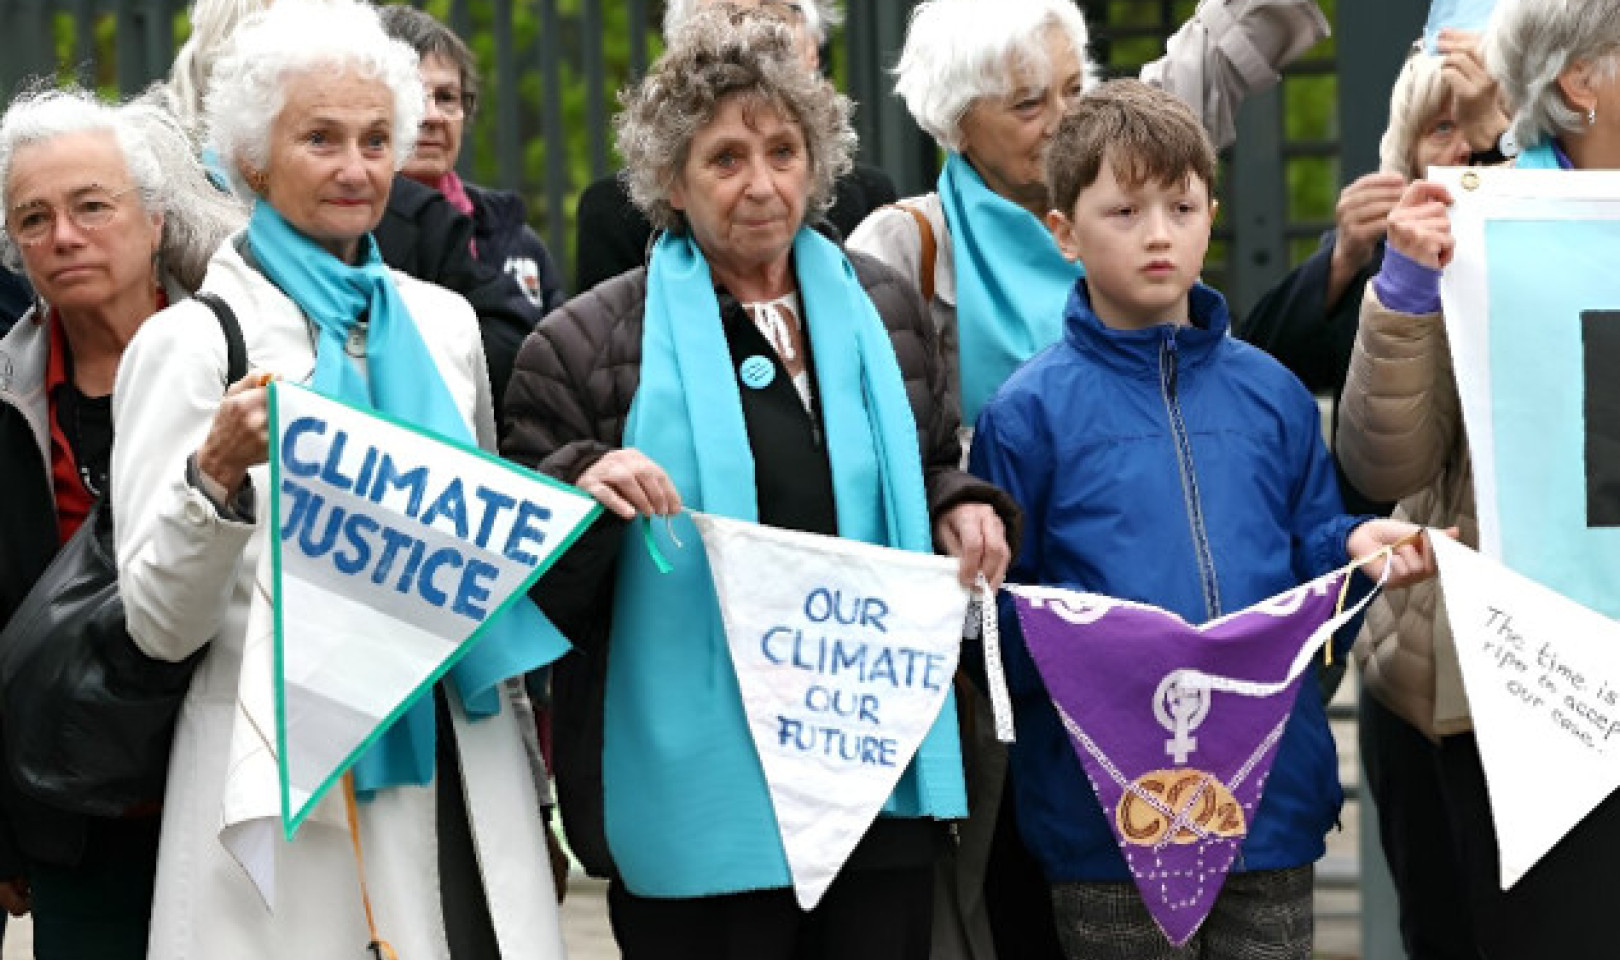 Las mujeres suizas sientan un precedente histórico en la batalla legal sobre el cambio climático